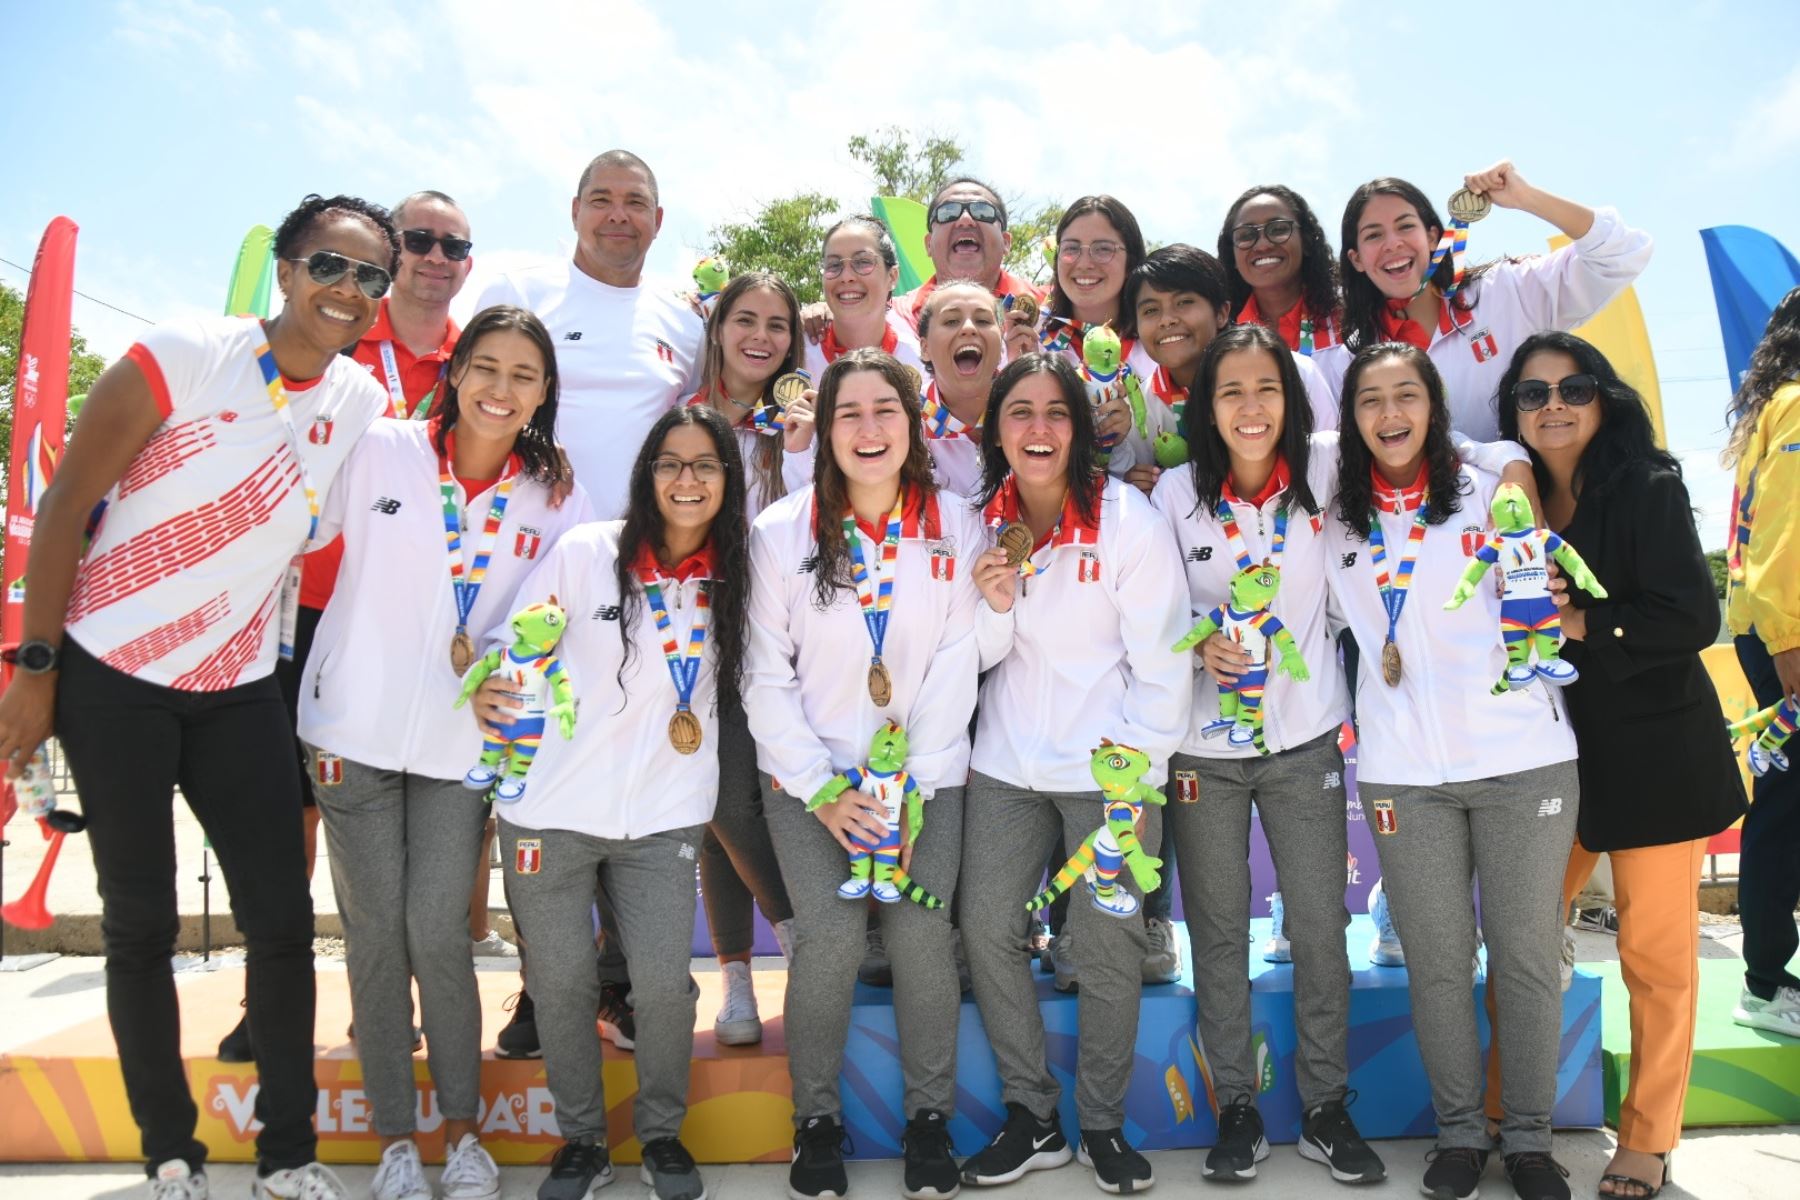 La delegación peruana sigue cosechando triunfos en los Juegos Bolivarianos Valledupar 2022, que se disputan en Colombia